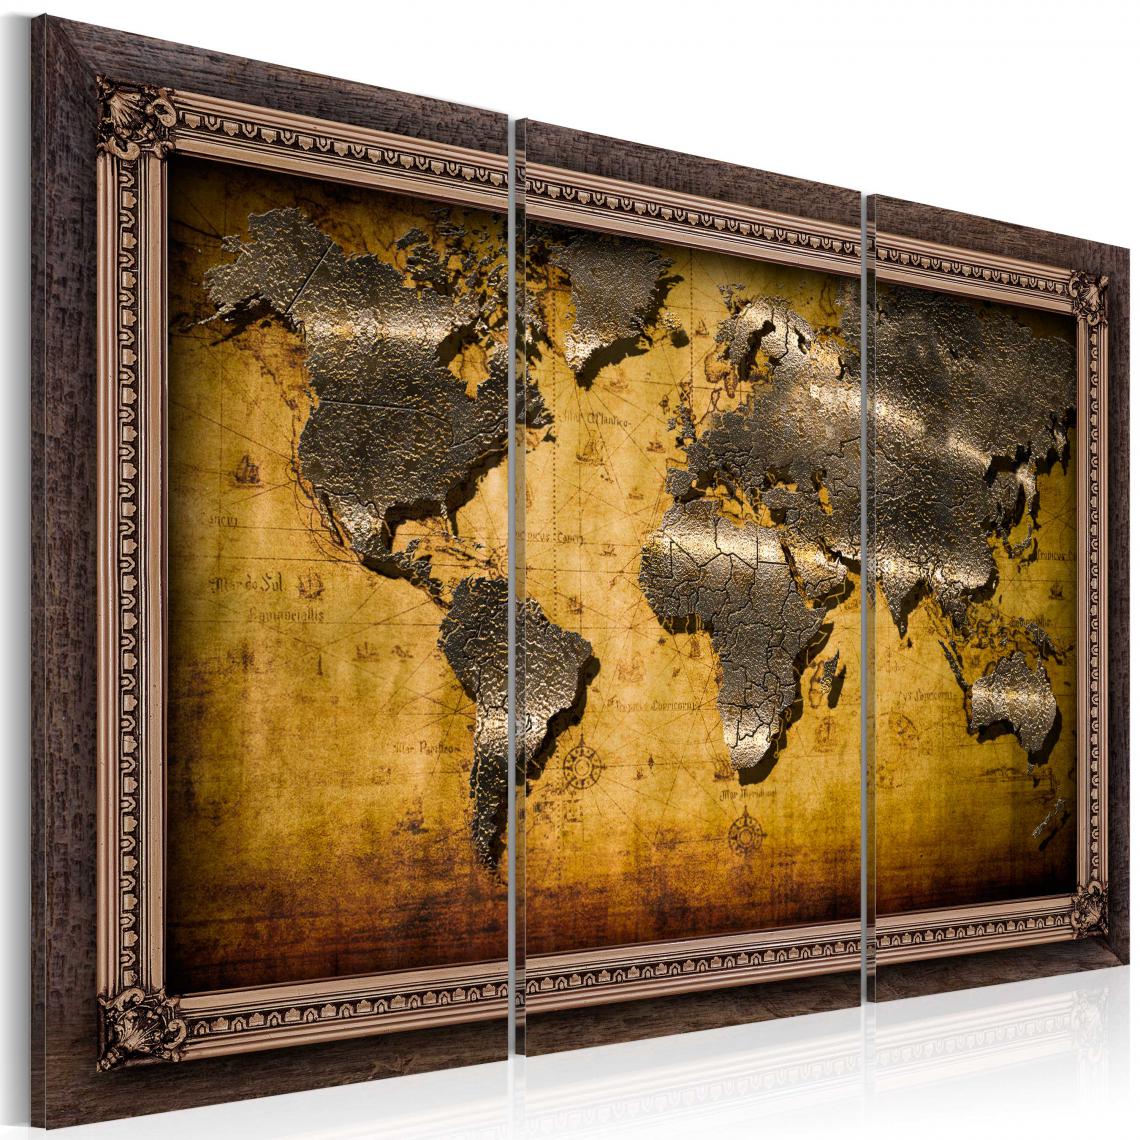 Decoshop26 - Tableau sur toile en 3 panneaux décoration murale image imprimée cadre en bois à suspendre Le monde dans un cadre 120x80 cm 11_0004175 - Tableaux, peintures